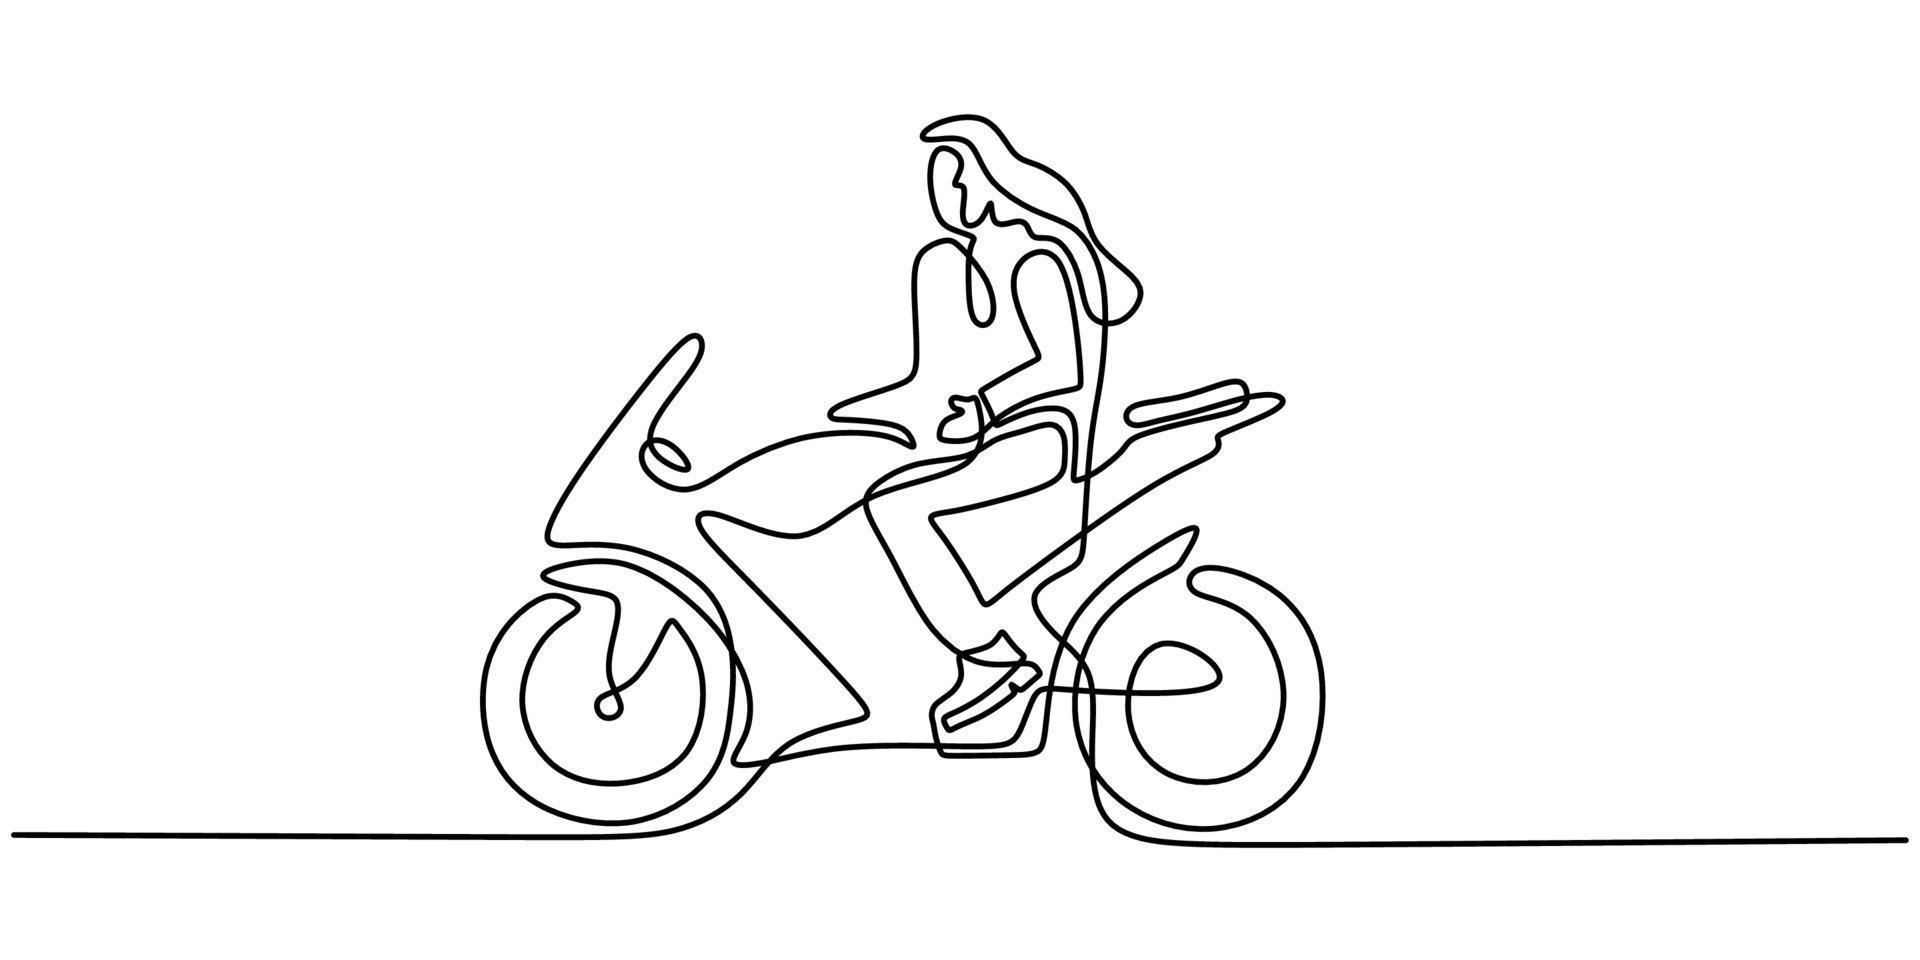 kontinuierliche eine einzige linie von frau, die sportmotorrad fährt vektor